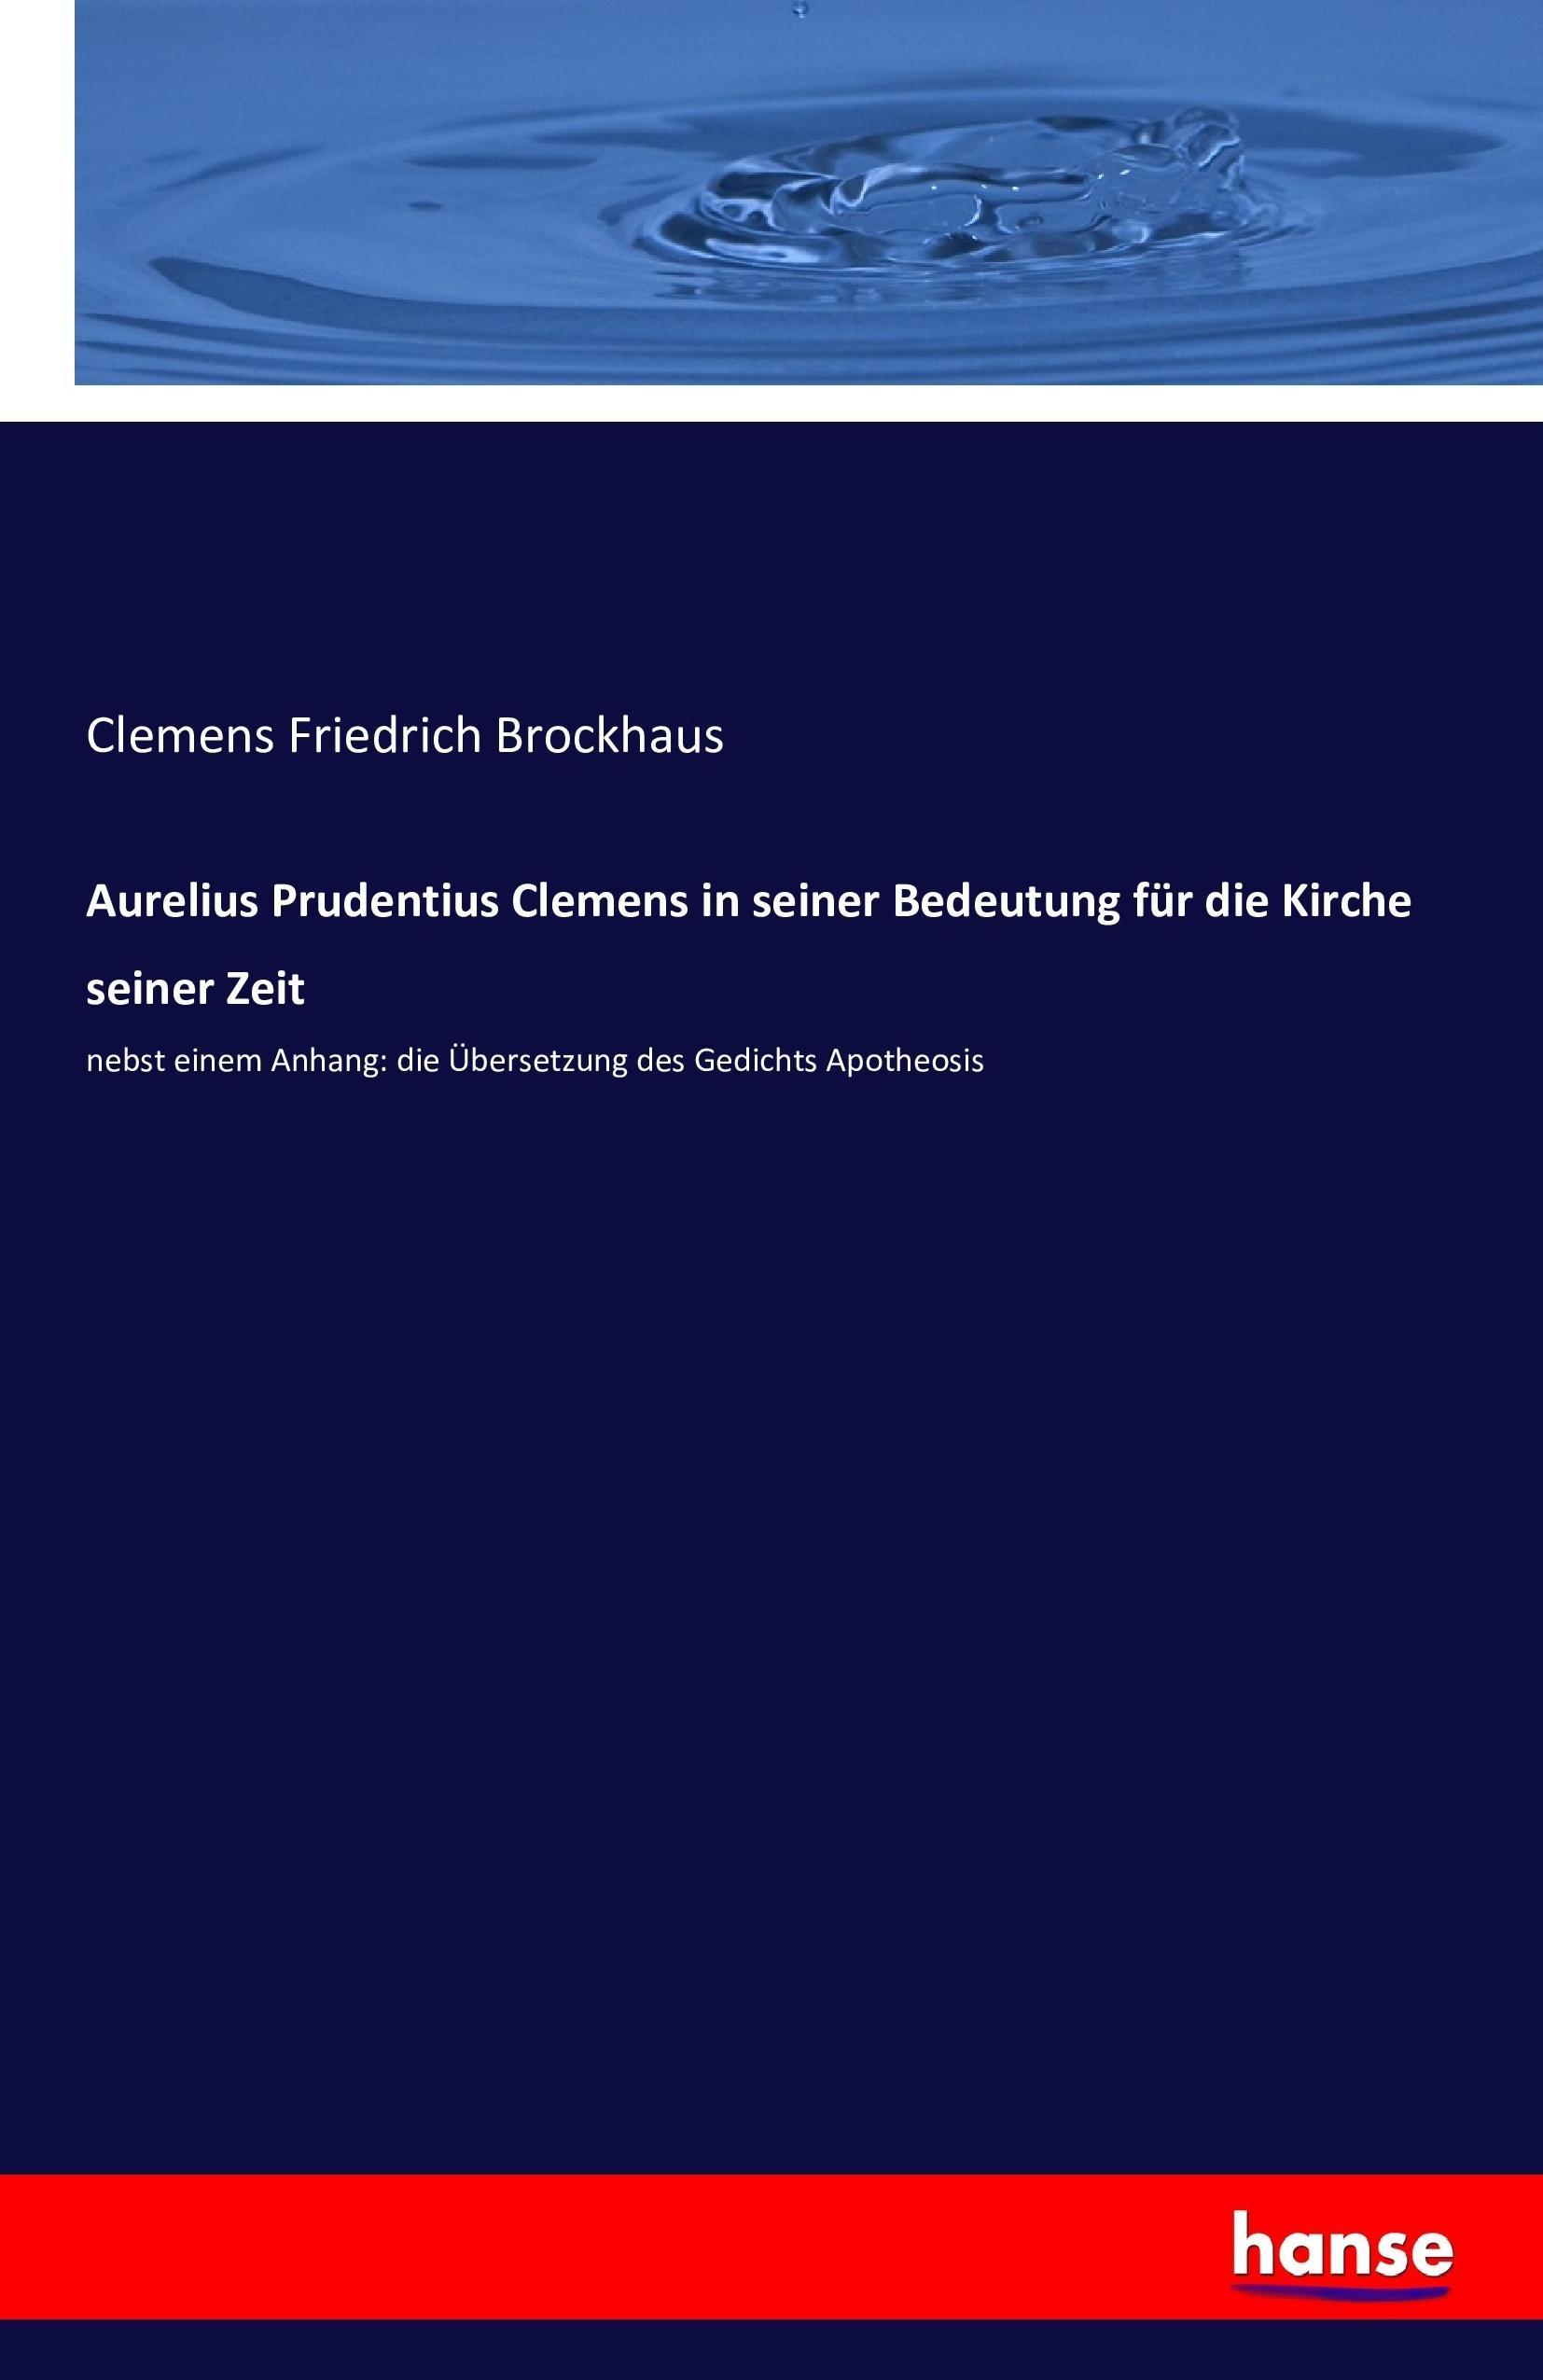 Aurelius Prudentius Clemens in seiner Bedeutung fuer die Kirche seiner Zeit - Brockhaus, Clemens Friedrich